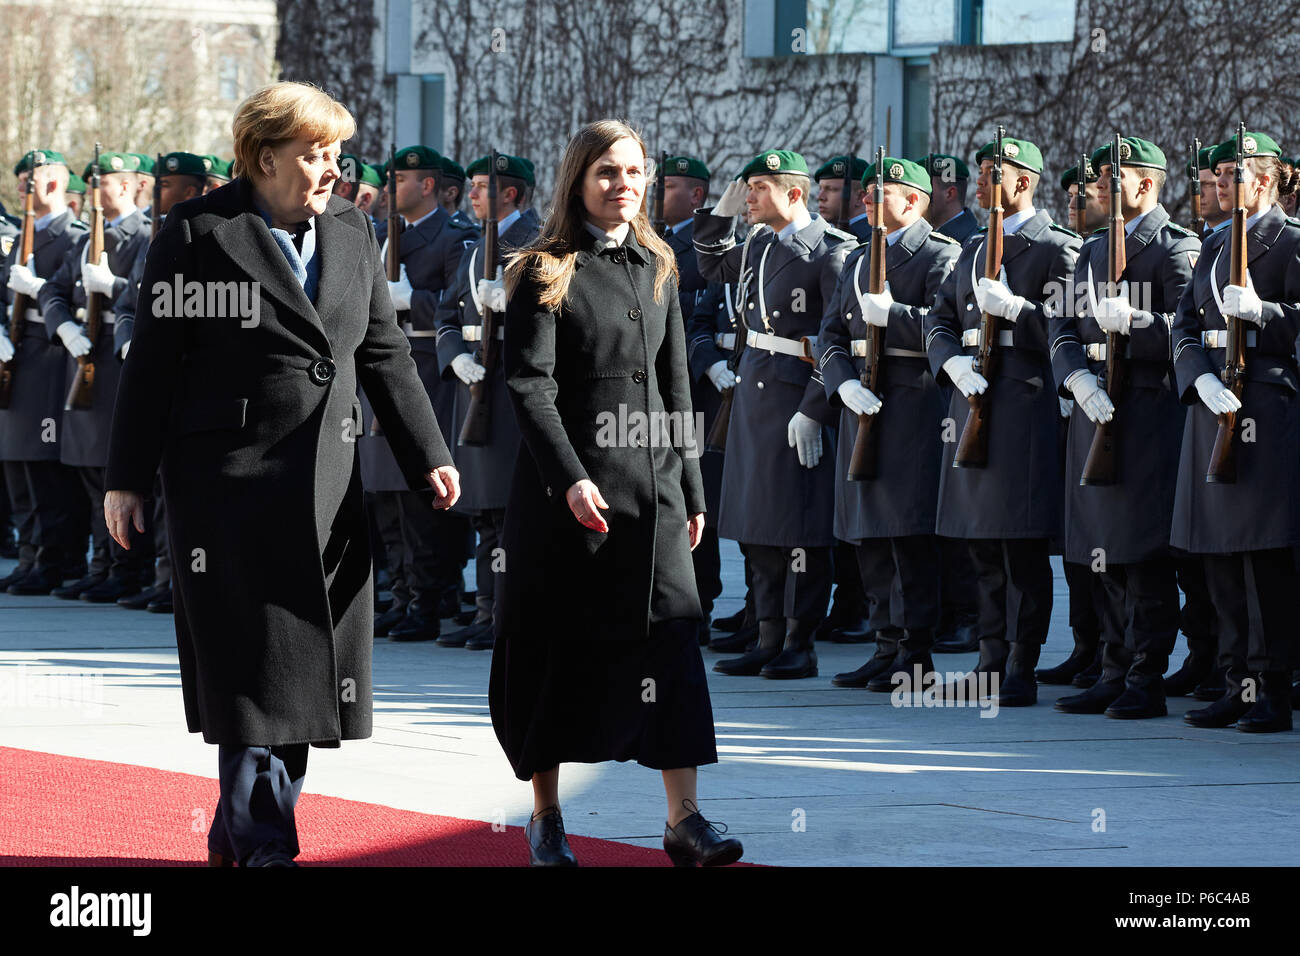 Berlin, Allemagne - La chancelière Angela Merkel reçoit le premier ministre de la République d'Islande, Katrín Jakobsdottir, avec les honneurs militaires dans la cour d'honneur de la chancellerie fédérale. Banque D'Images